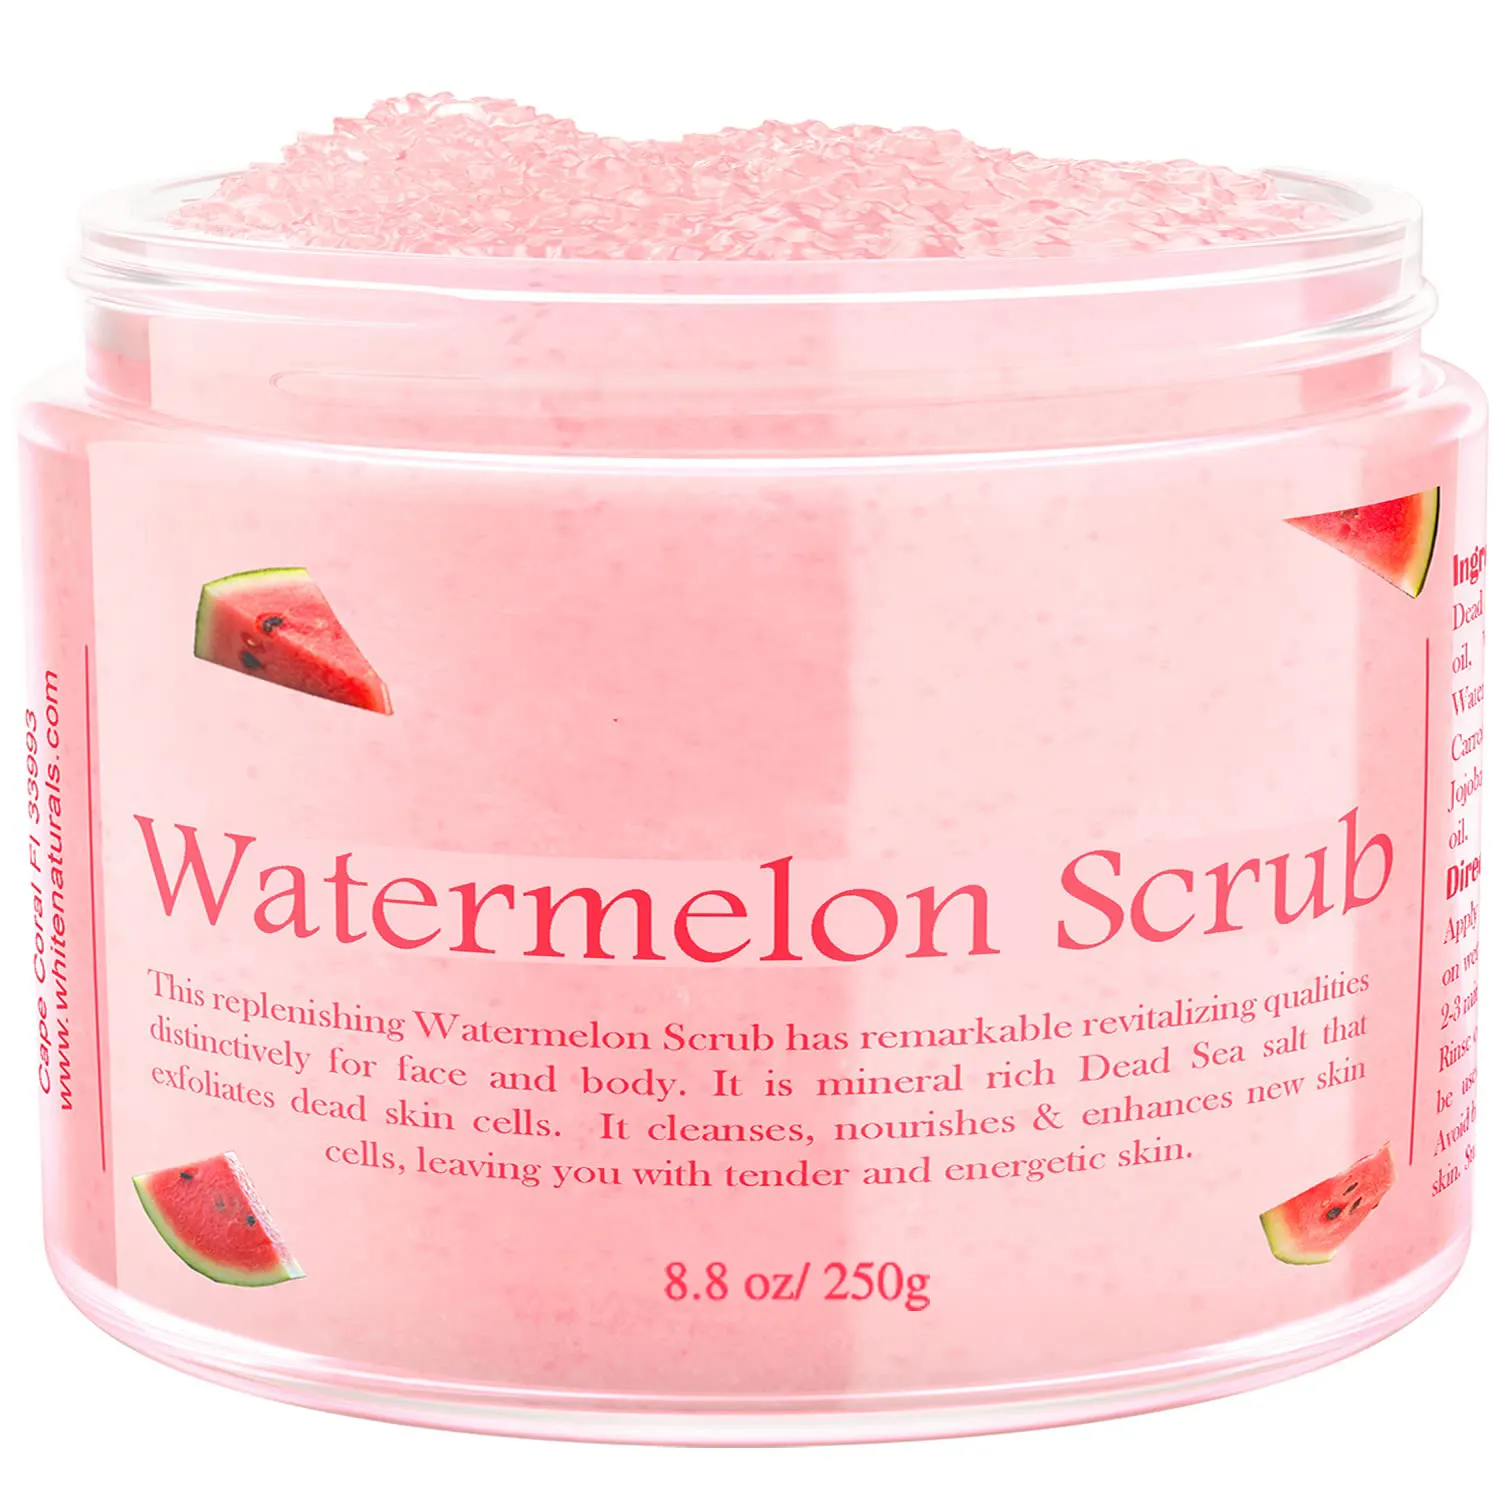 Organic Bath Deep Cleansing Smooth Hydrating Exfoliating Soft Skin Dead Sea Salt Shea Butter Pink Watermelon Body Scrub